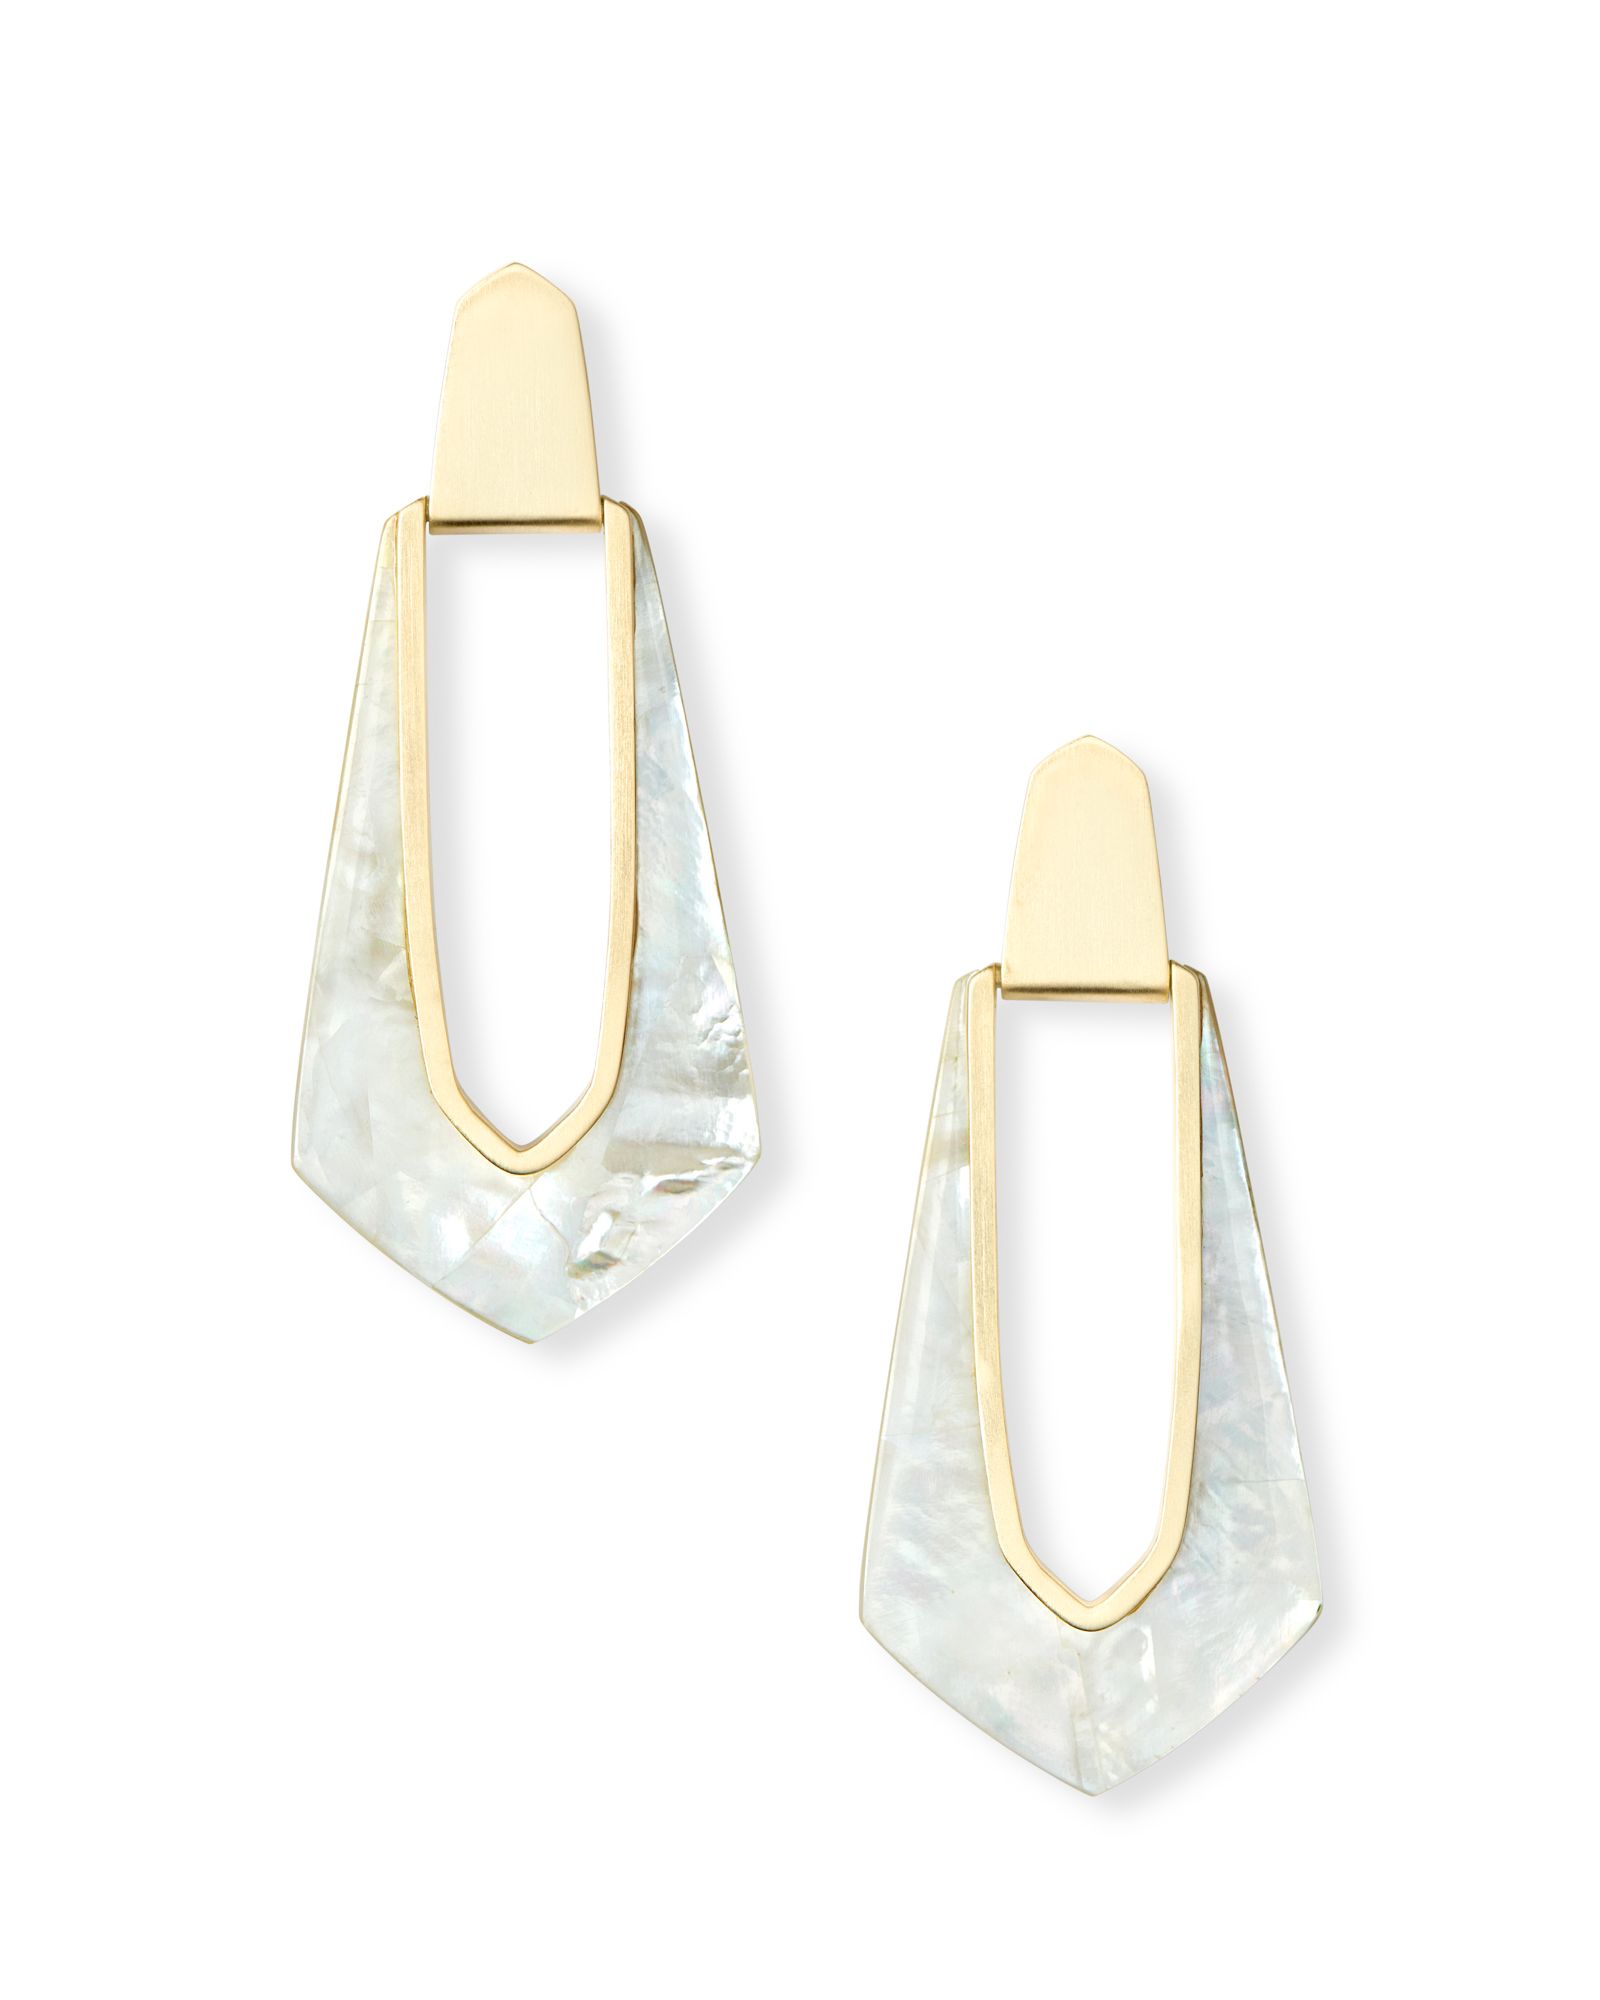 Kiernan Gold Hoop Earrings in Ivory Pearl | Kendra Scott | Kendra Scott